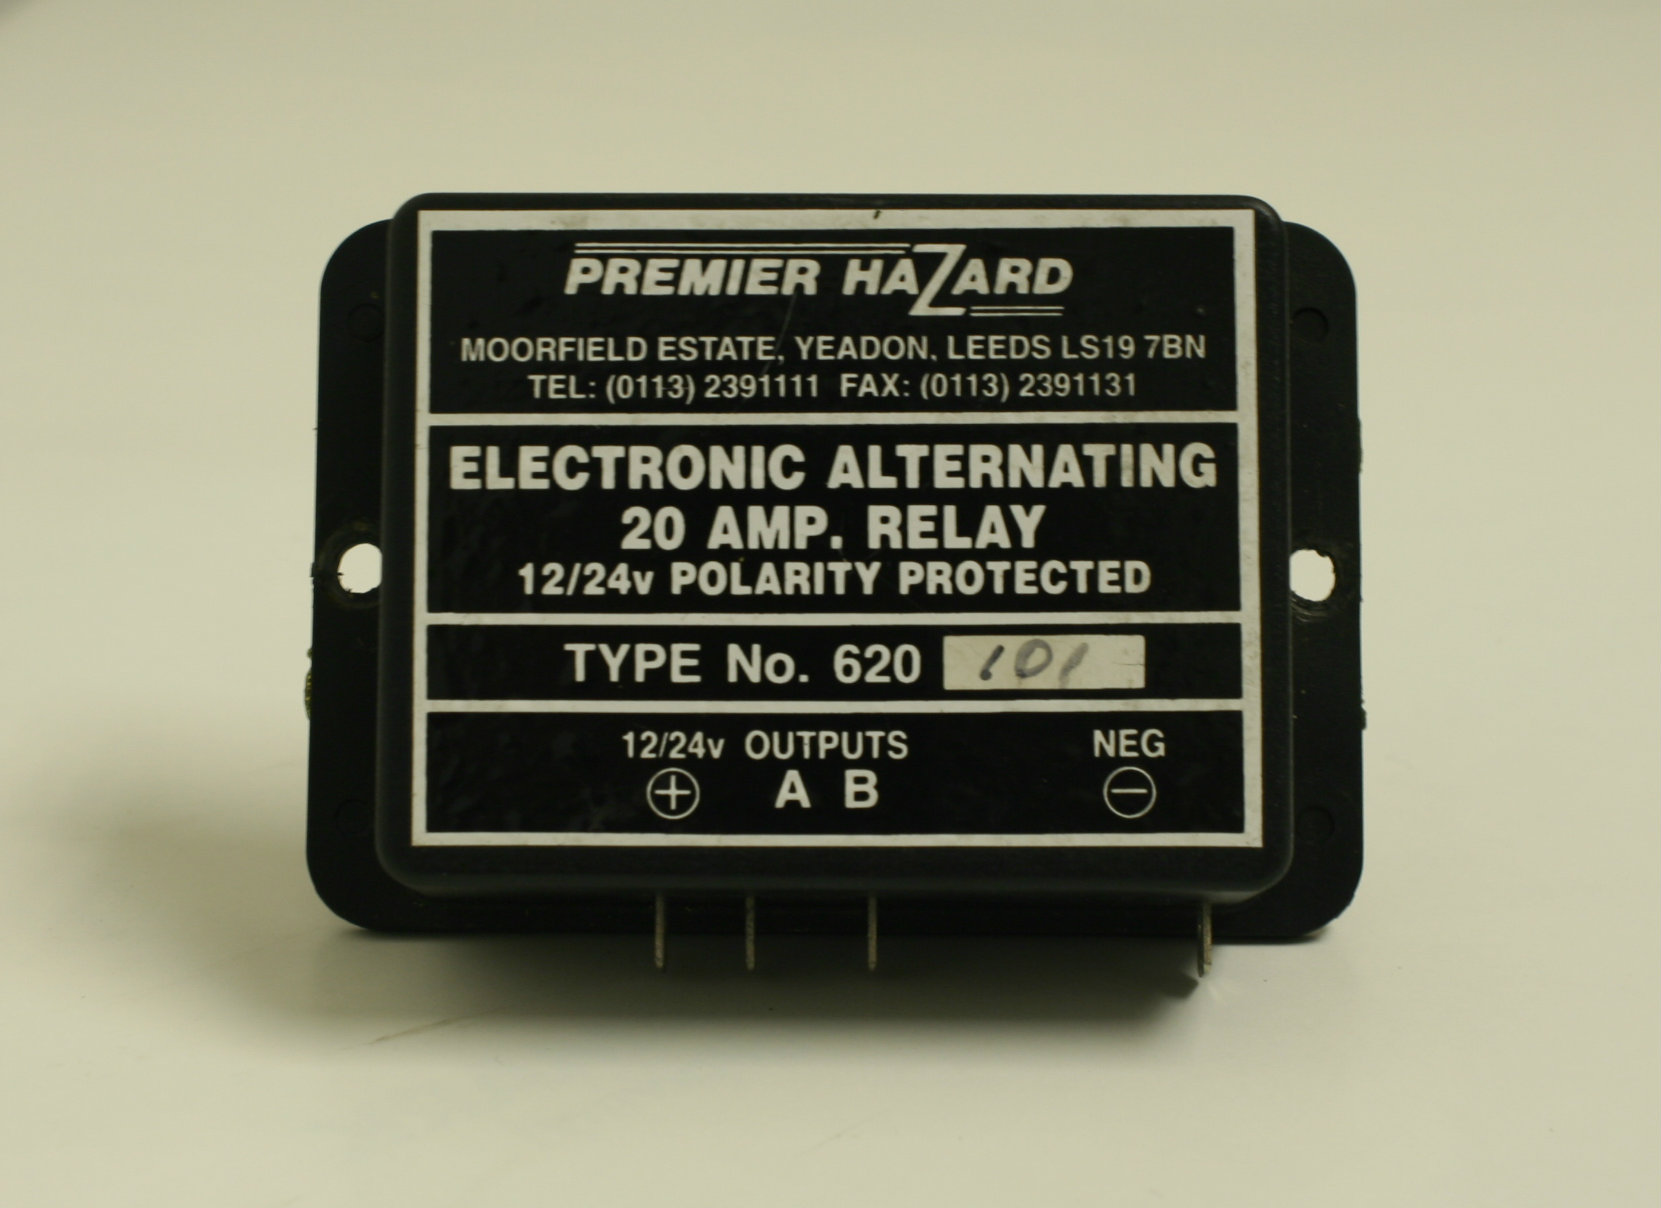 Premier Hazard 620 flasher unit